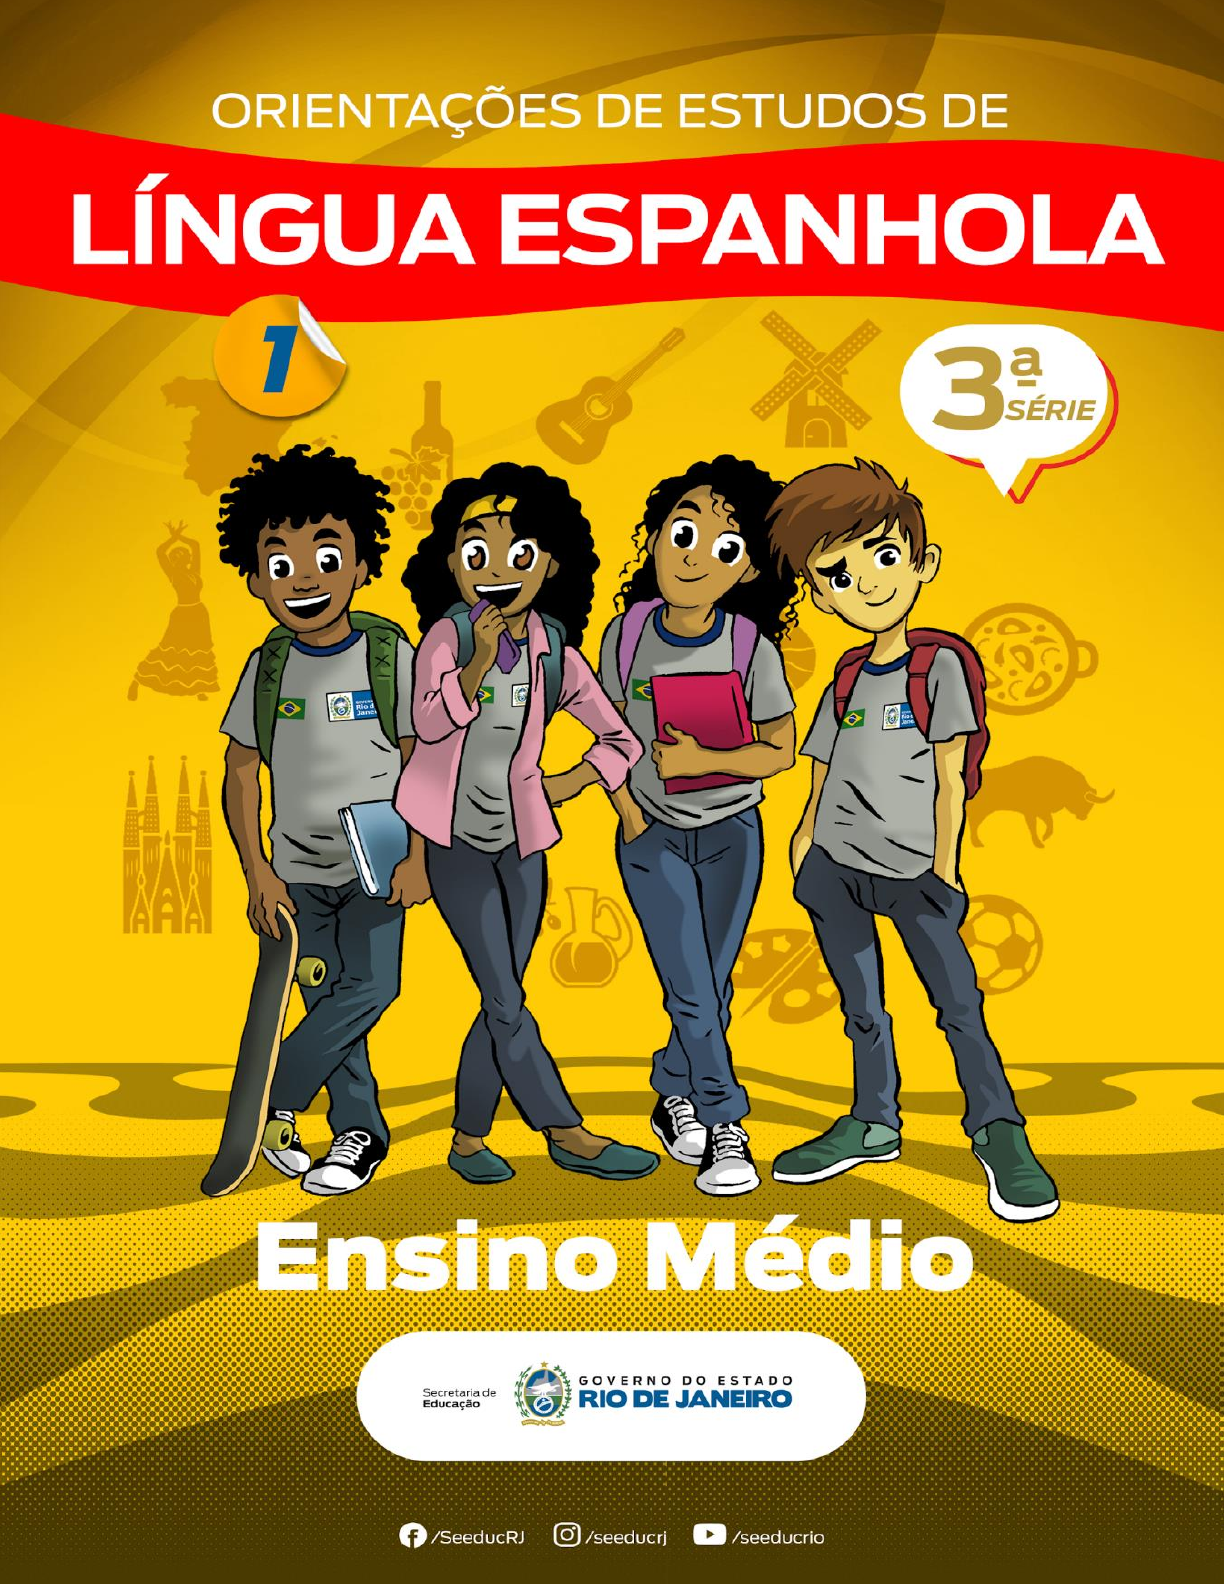 Apostila de Espanhol Eja, PDF, Estresse (Linguística)